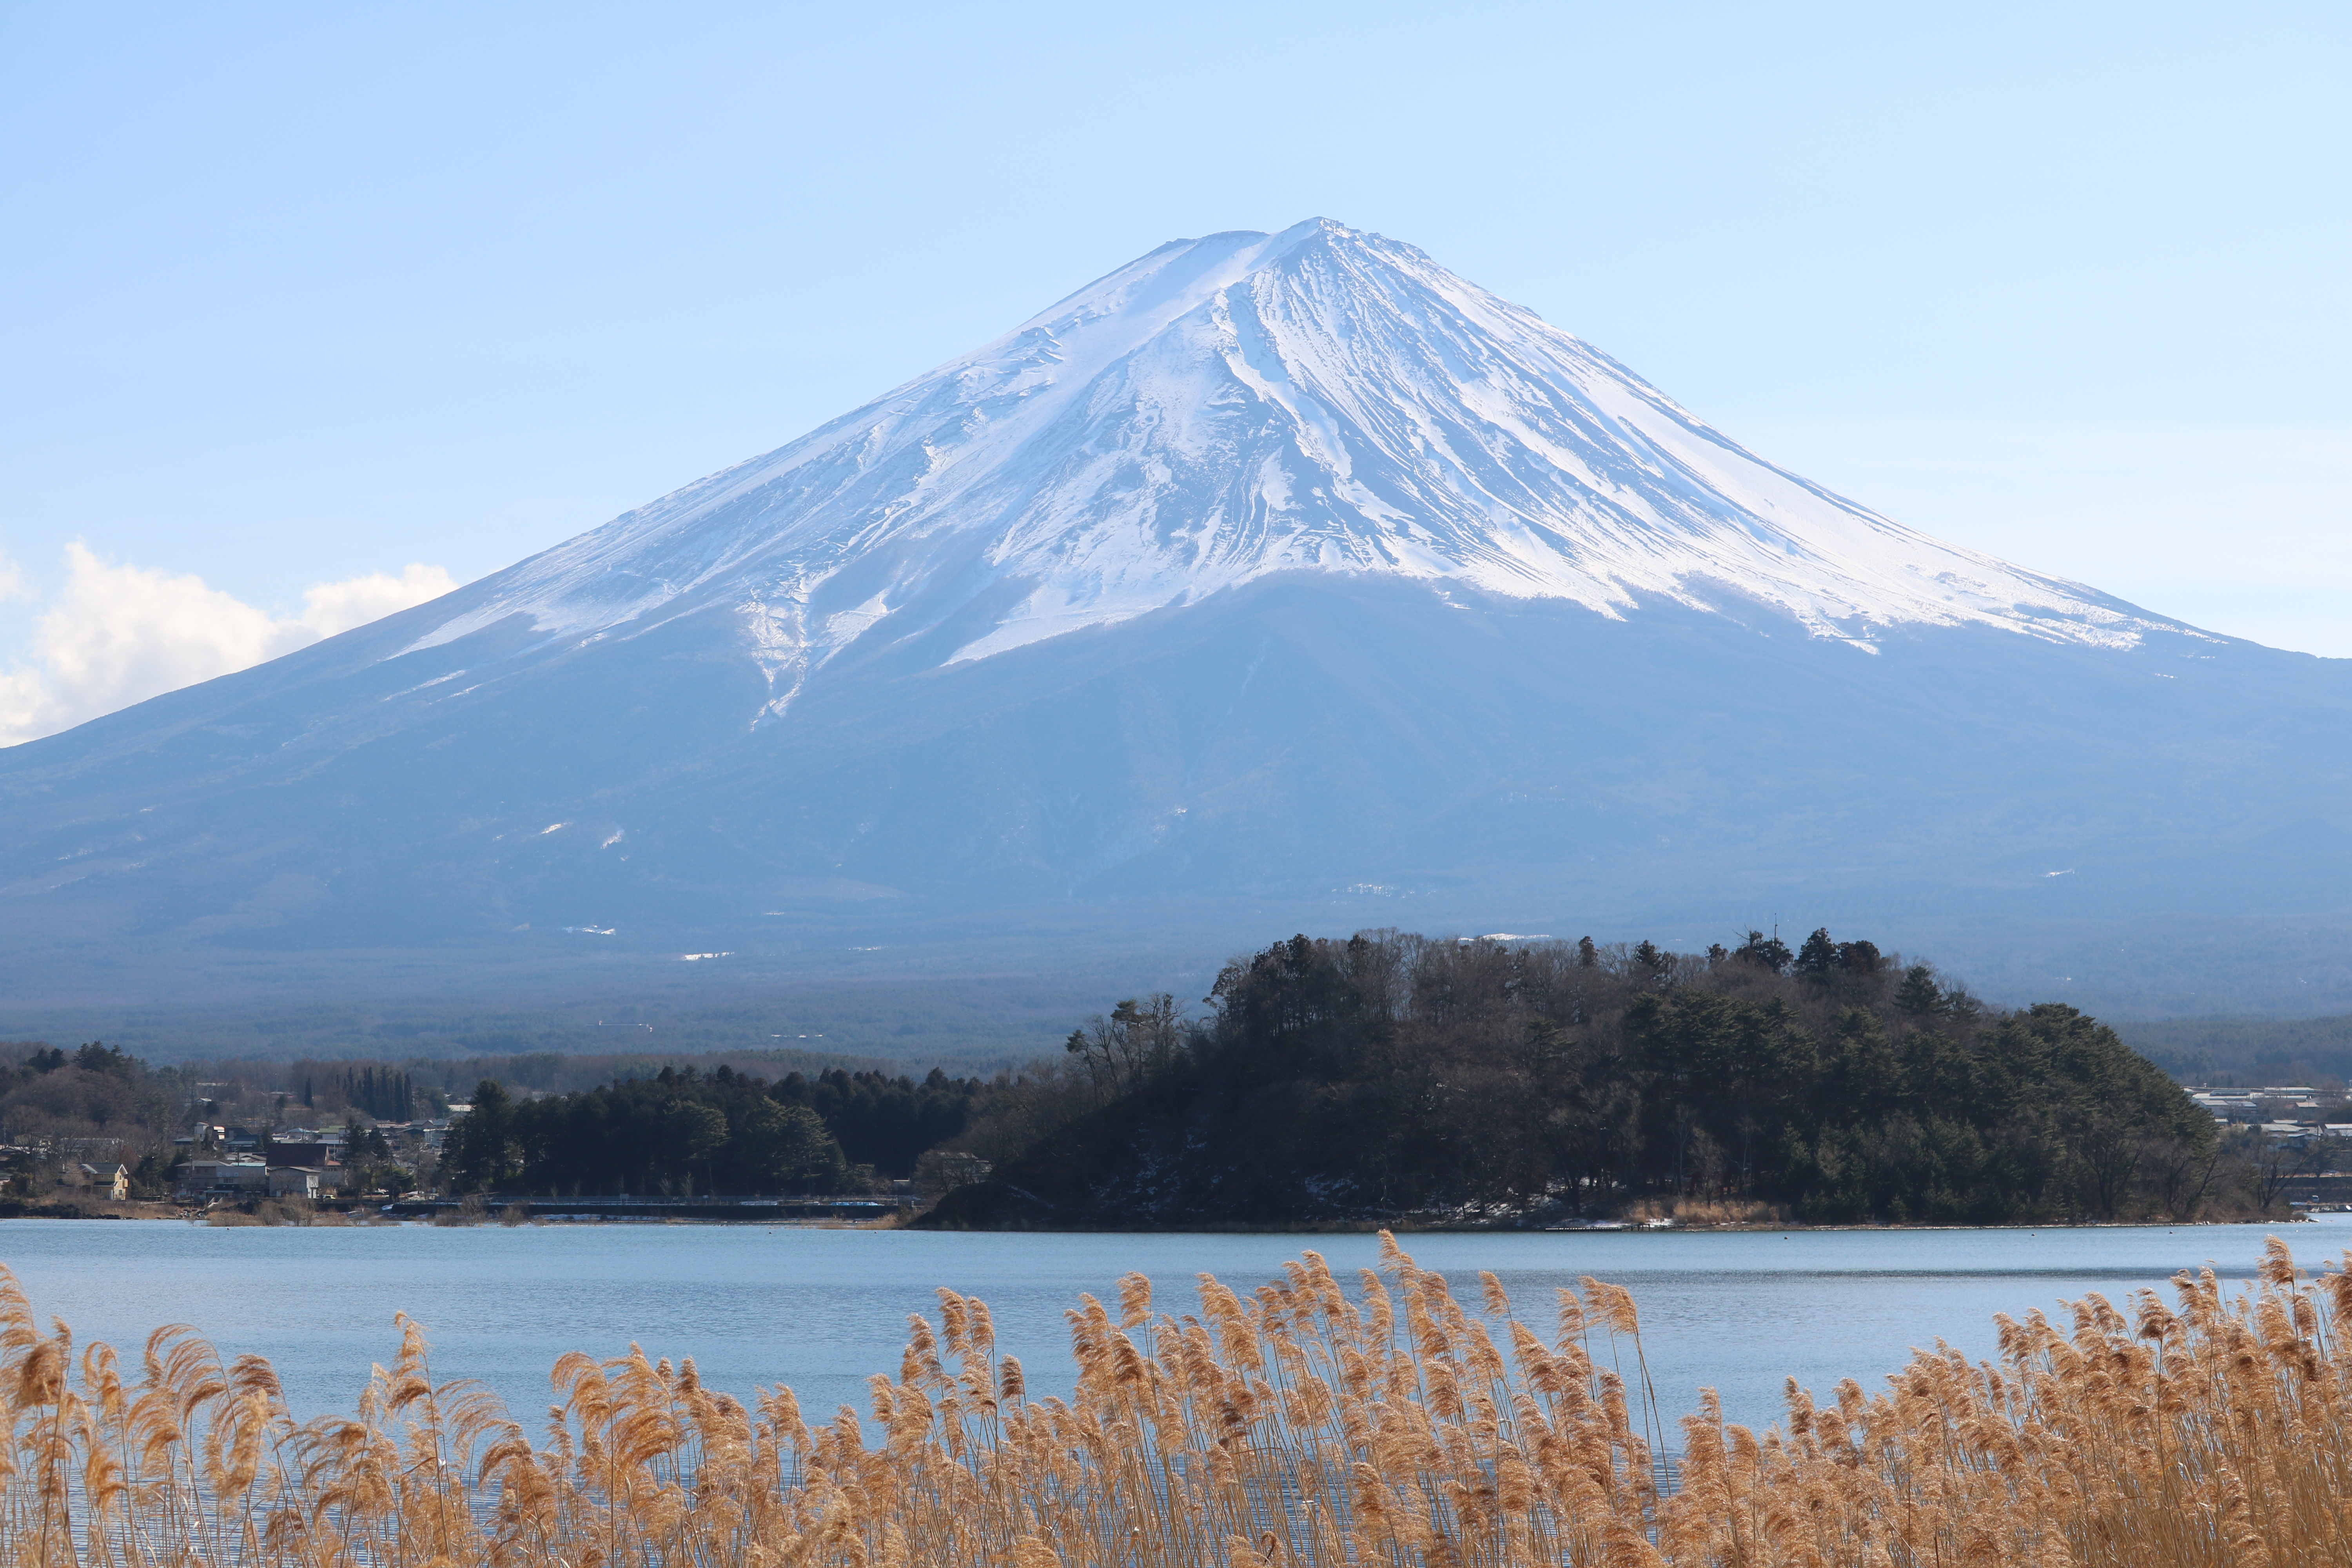  Fuji  san der majest tische Vulkan Japan Almanach Blog